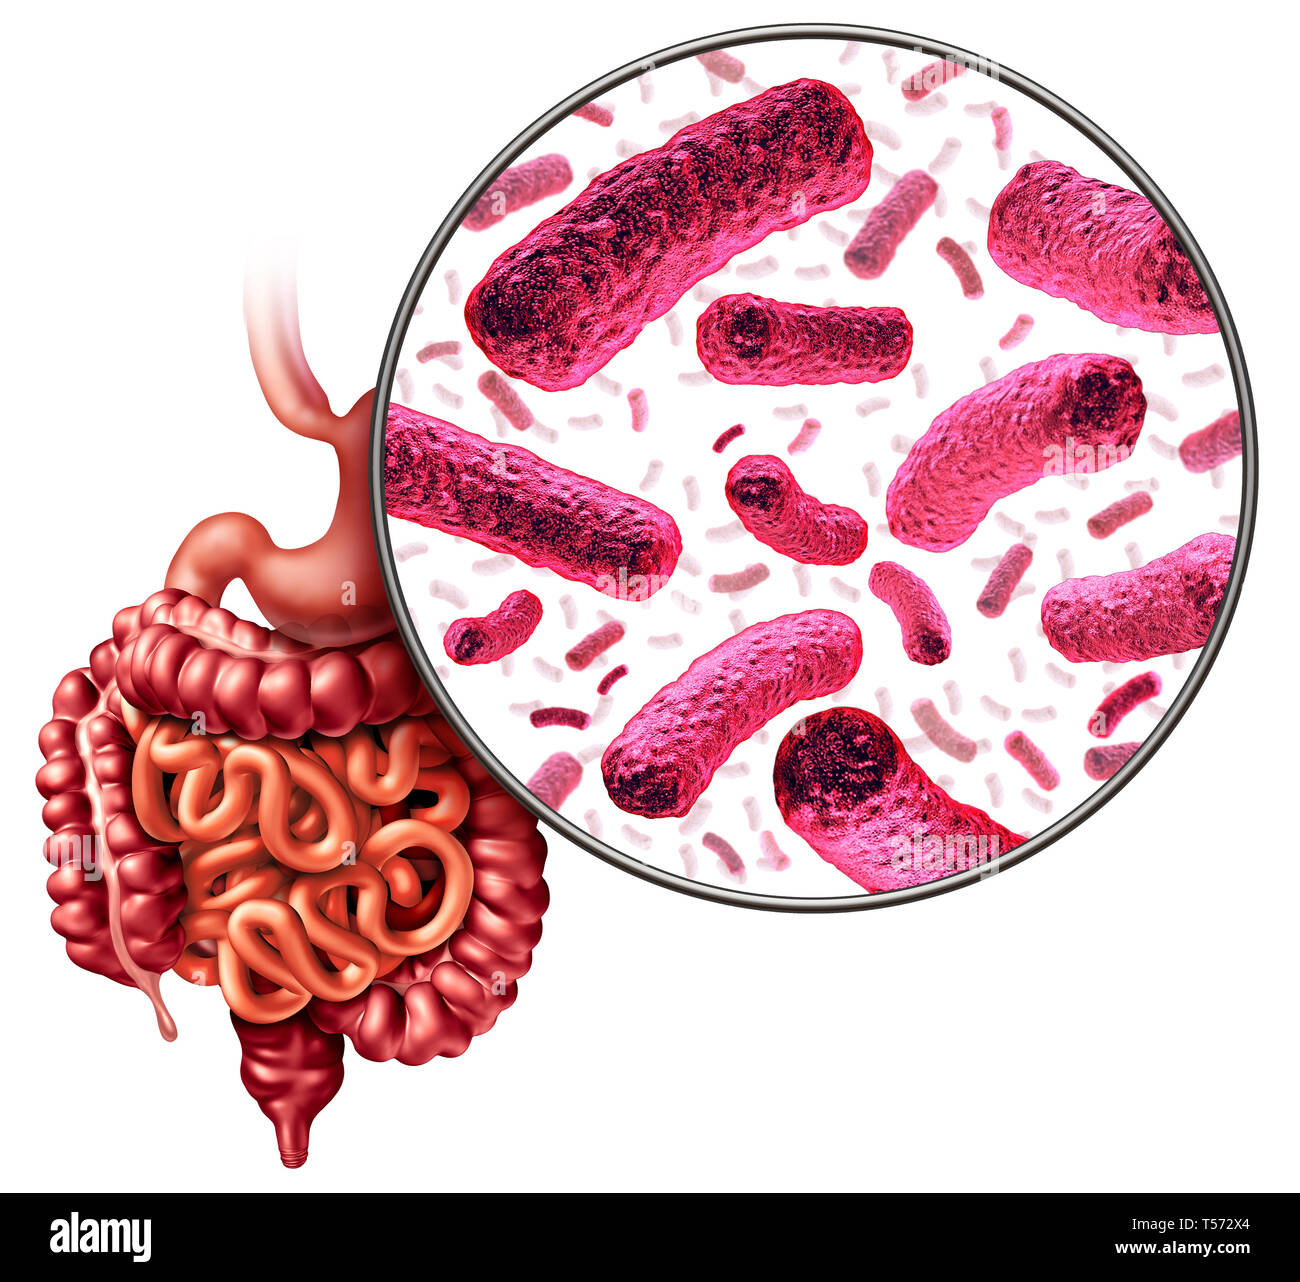 Les bactéries de l'intestin et de la digestion ou de la flore intestinale comme bactérie intestinale anatomie concept comme un 3D illustration. Banque D'Images